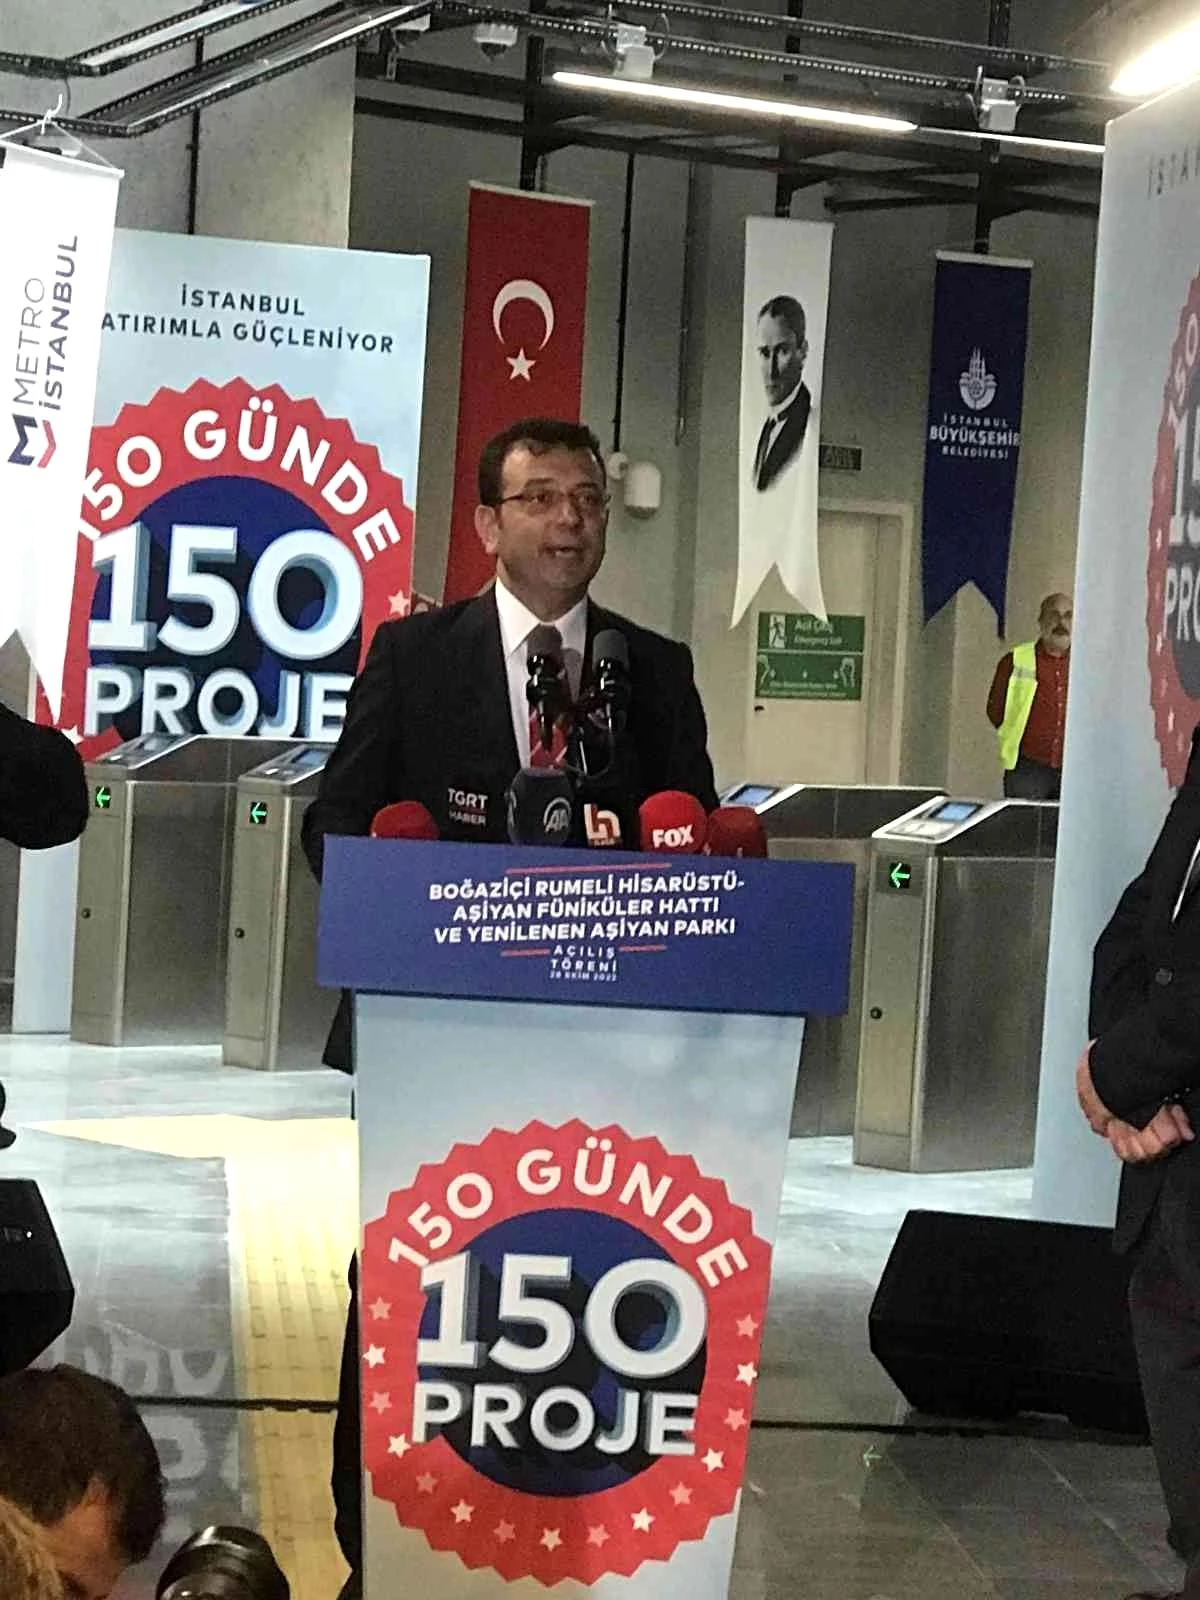 CHP Genel Başkanı Kılıçdaroğlu, Aşiyan Füniküler Hattı\'nın açılışında konuştu